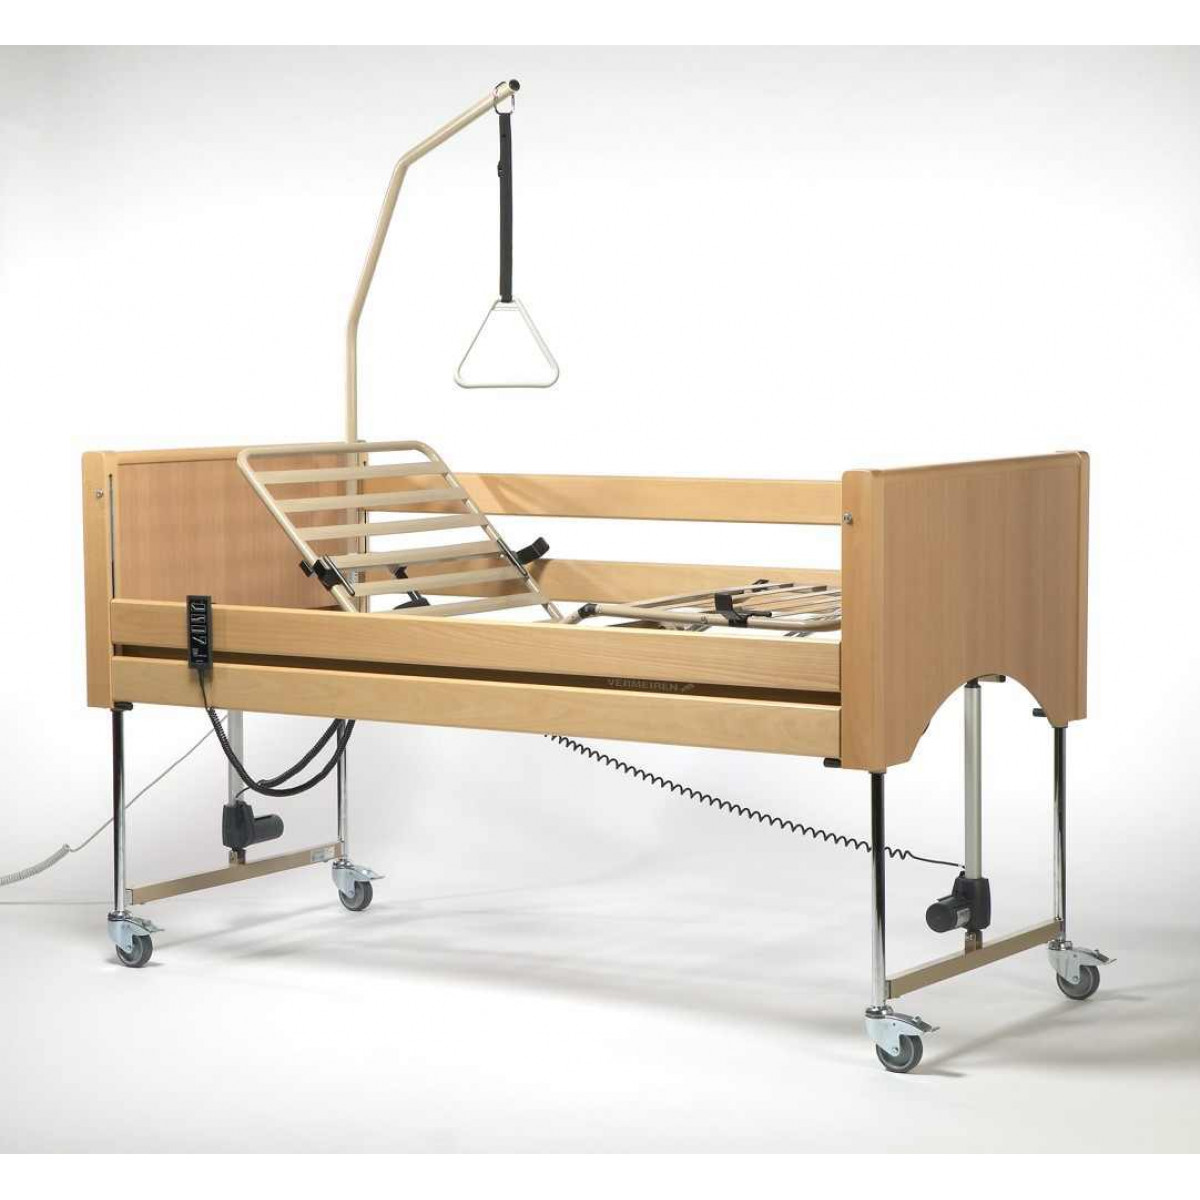 Подъемные кровати для лежачих. Кровать Luna Vermeiren с электроприводом. Кровать медицинская Vermeiren Luna. Кровать функциональная с механическим приводом f8 novokom 210*90*90. Кровать медицинская Vermeiren Luna сложенная.